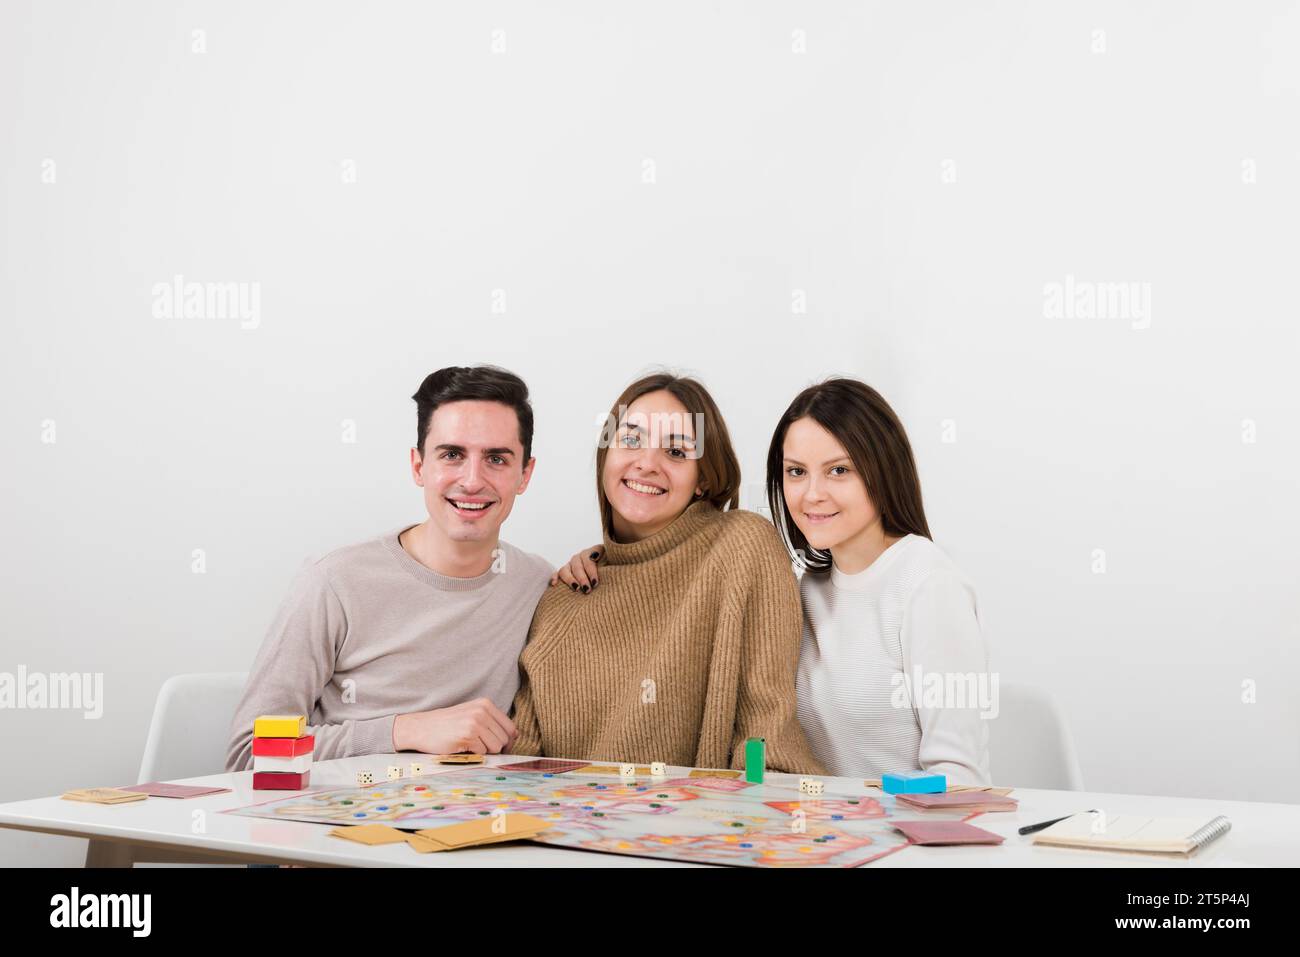 Vista frontale degli amici sorridenti che giocano a un gioco da tavolo Foto Stock